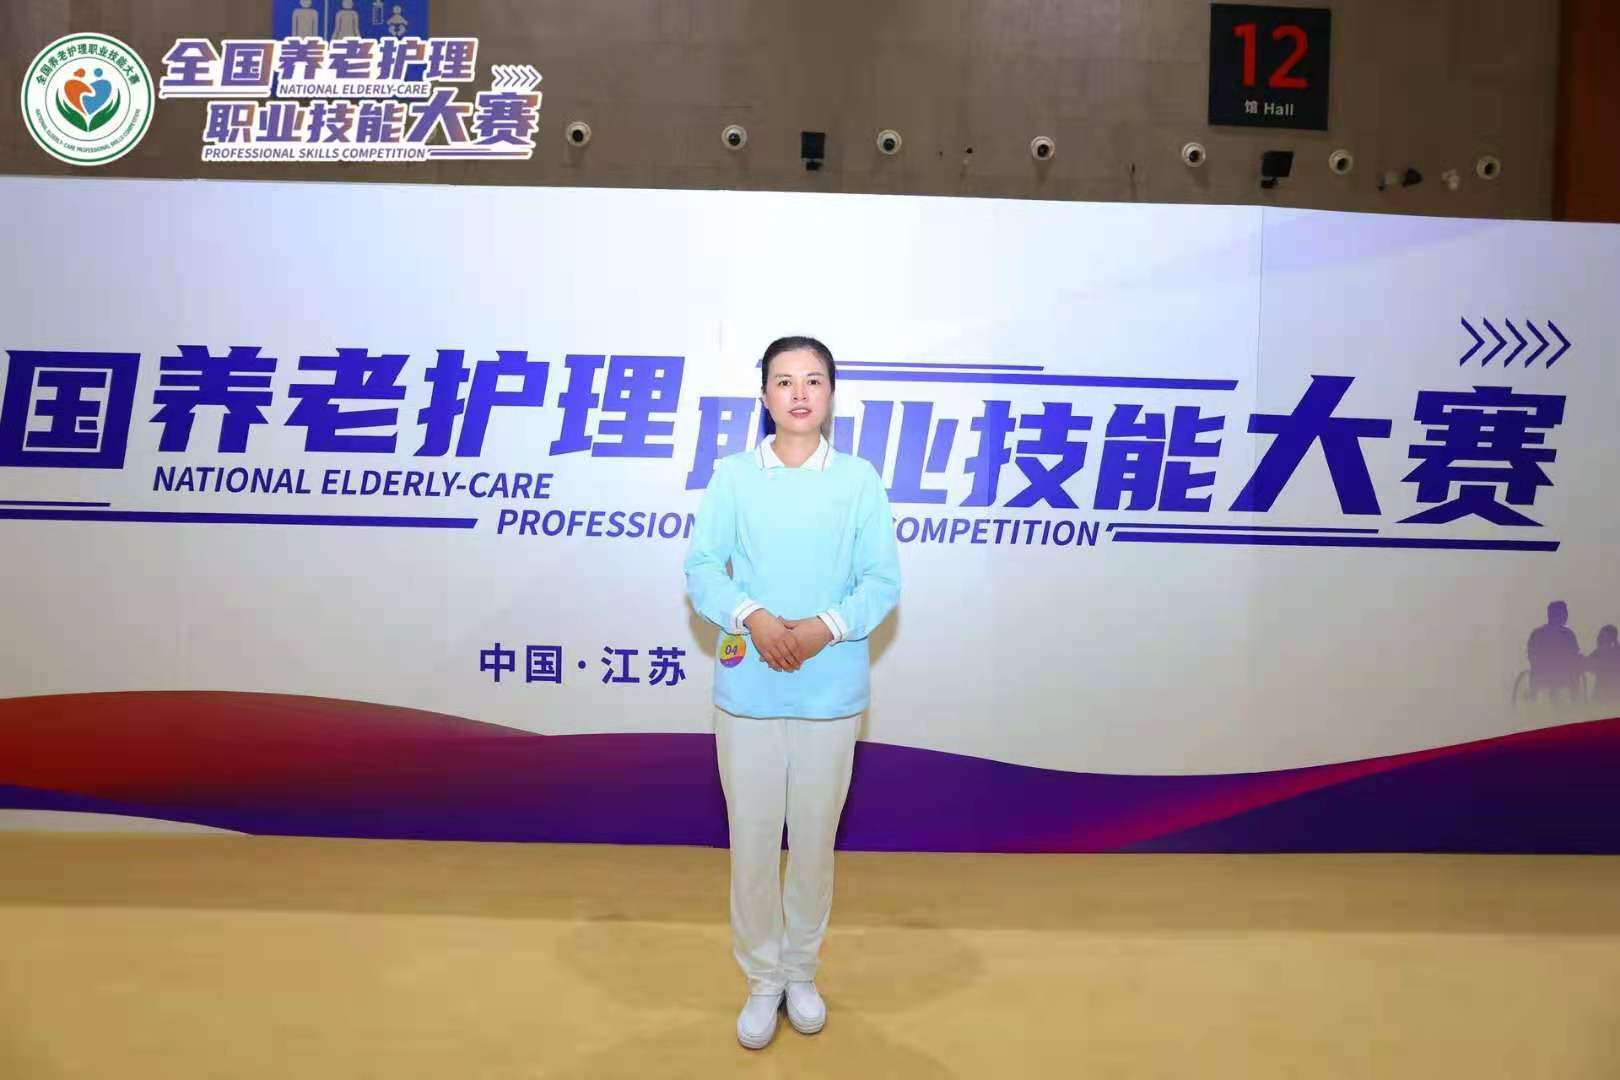 江苏南京选手倪燕摘得全国养老护理职业技能大赛冠军